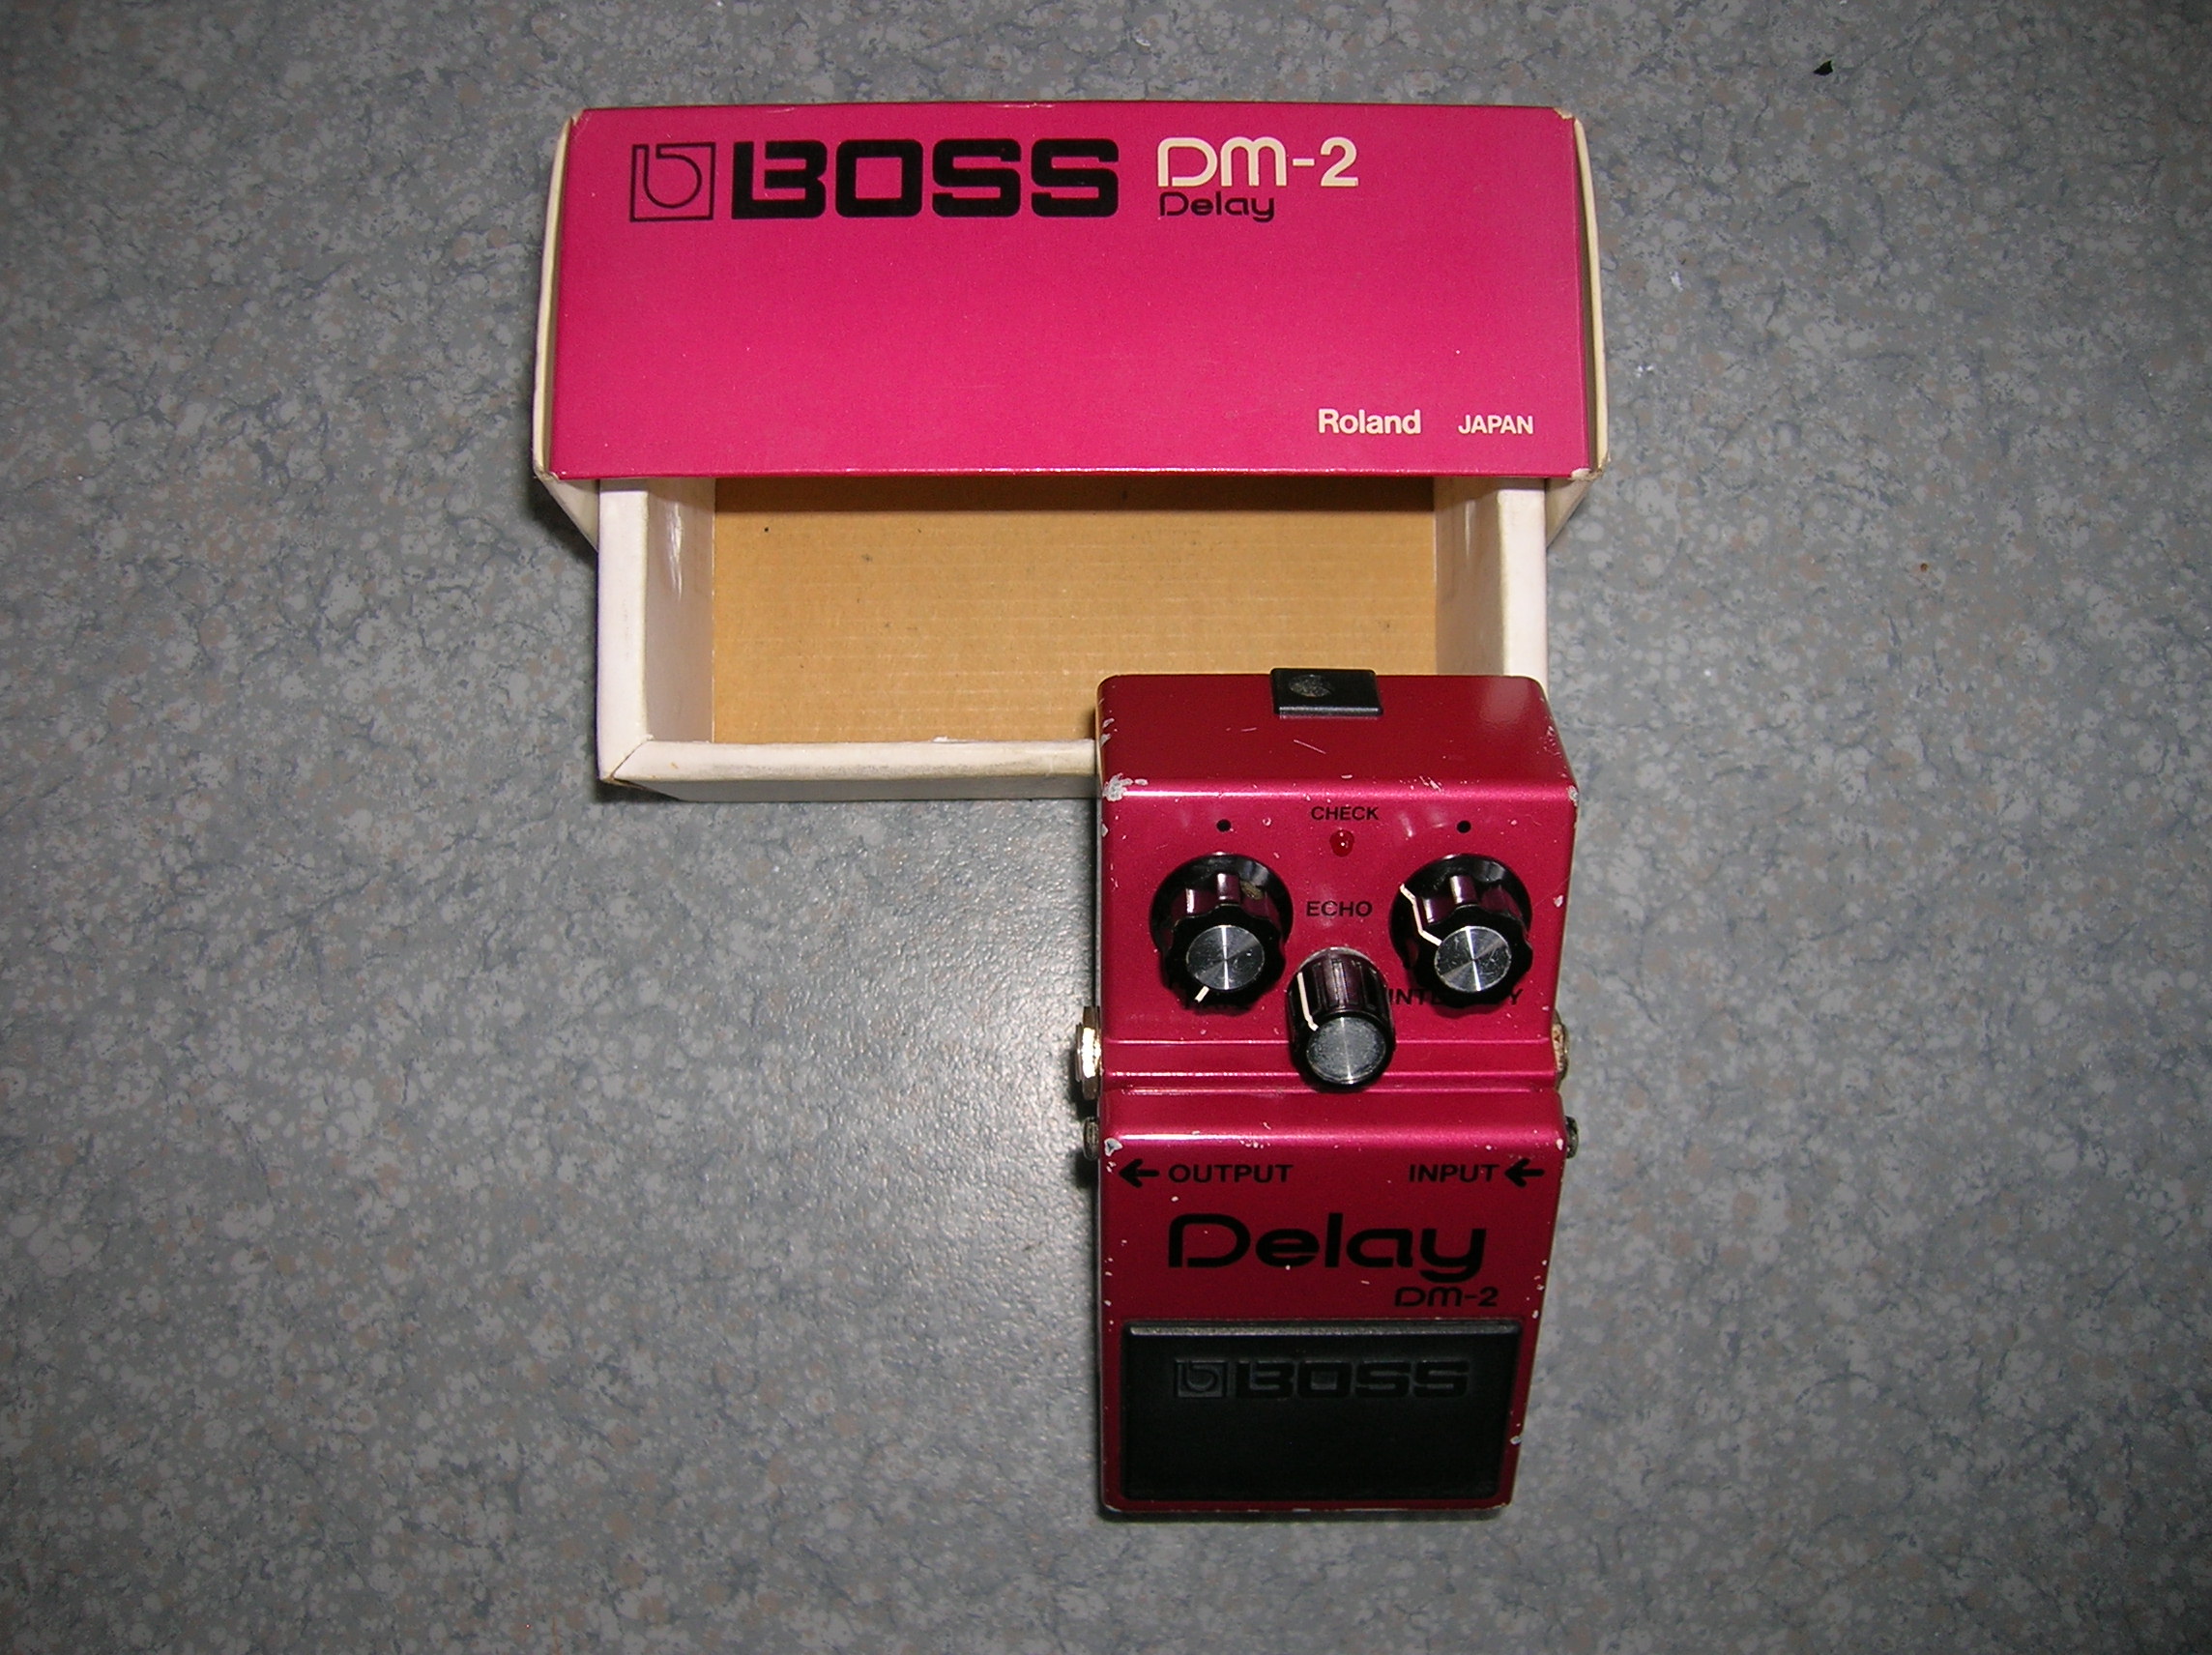 BOSS DM-2 ディレイ 前期型 本体のみ - ギター